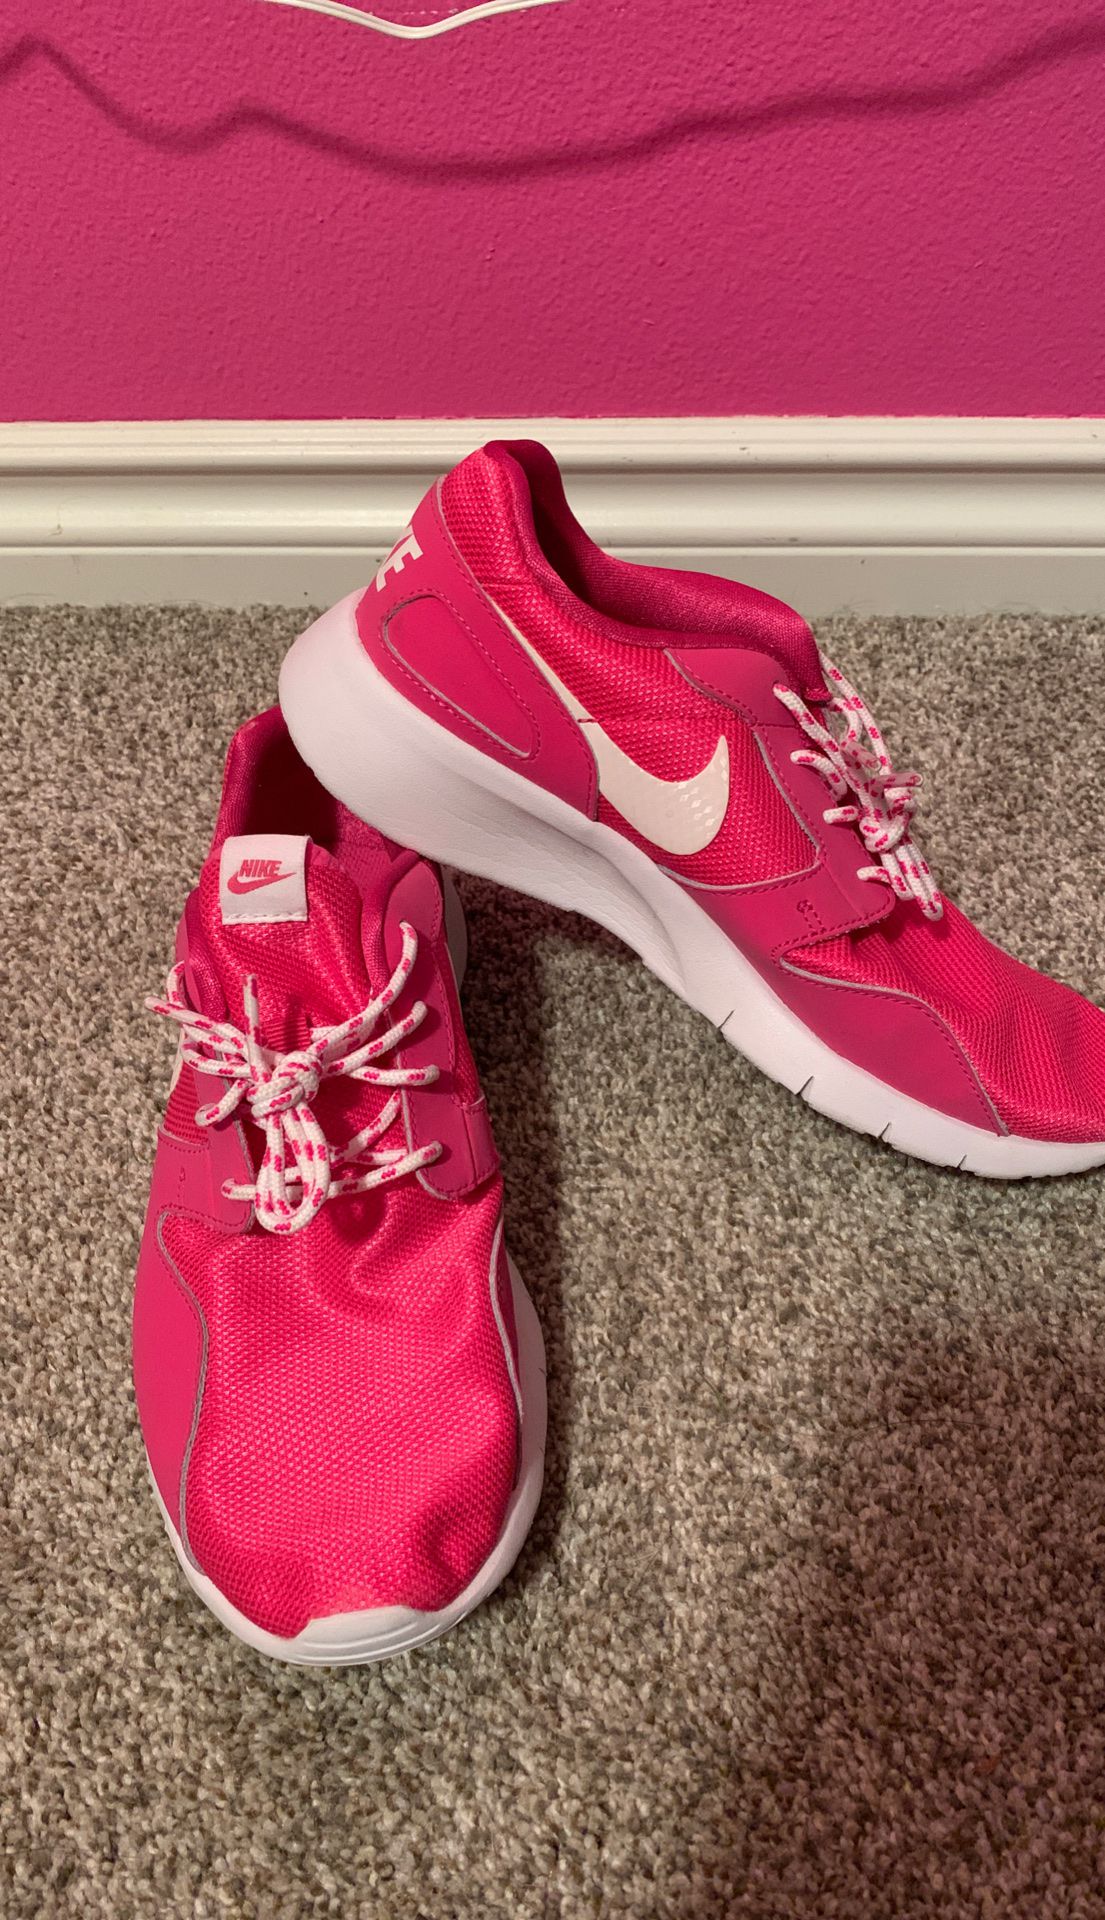 Nike Women’s Shoe 6.5